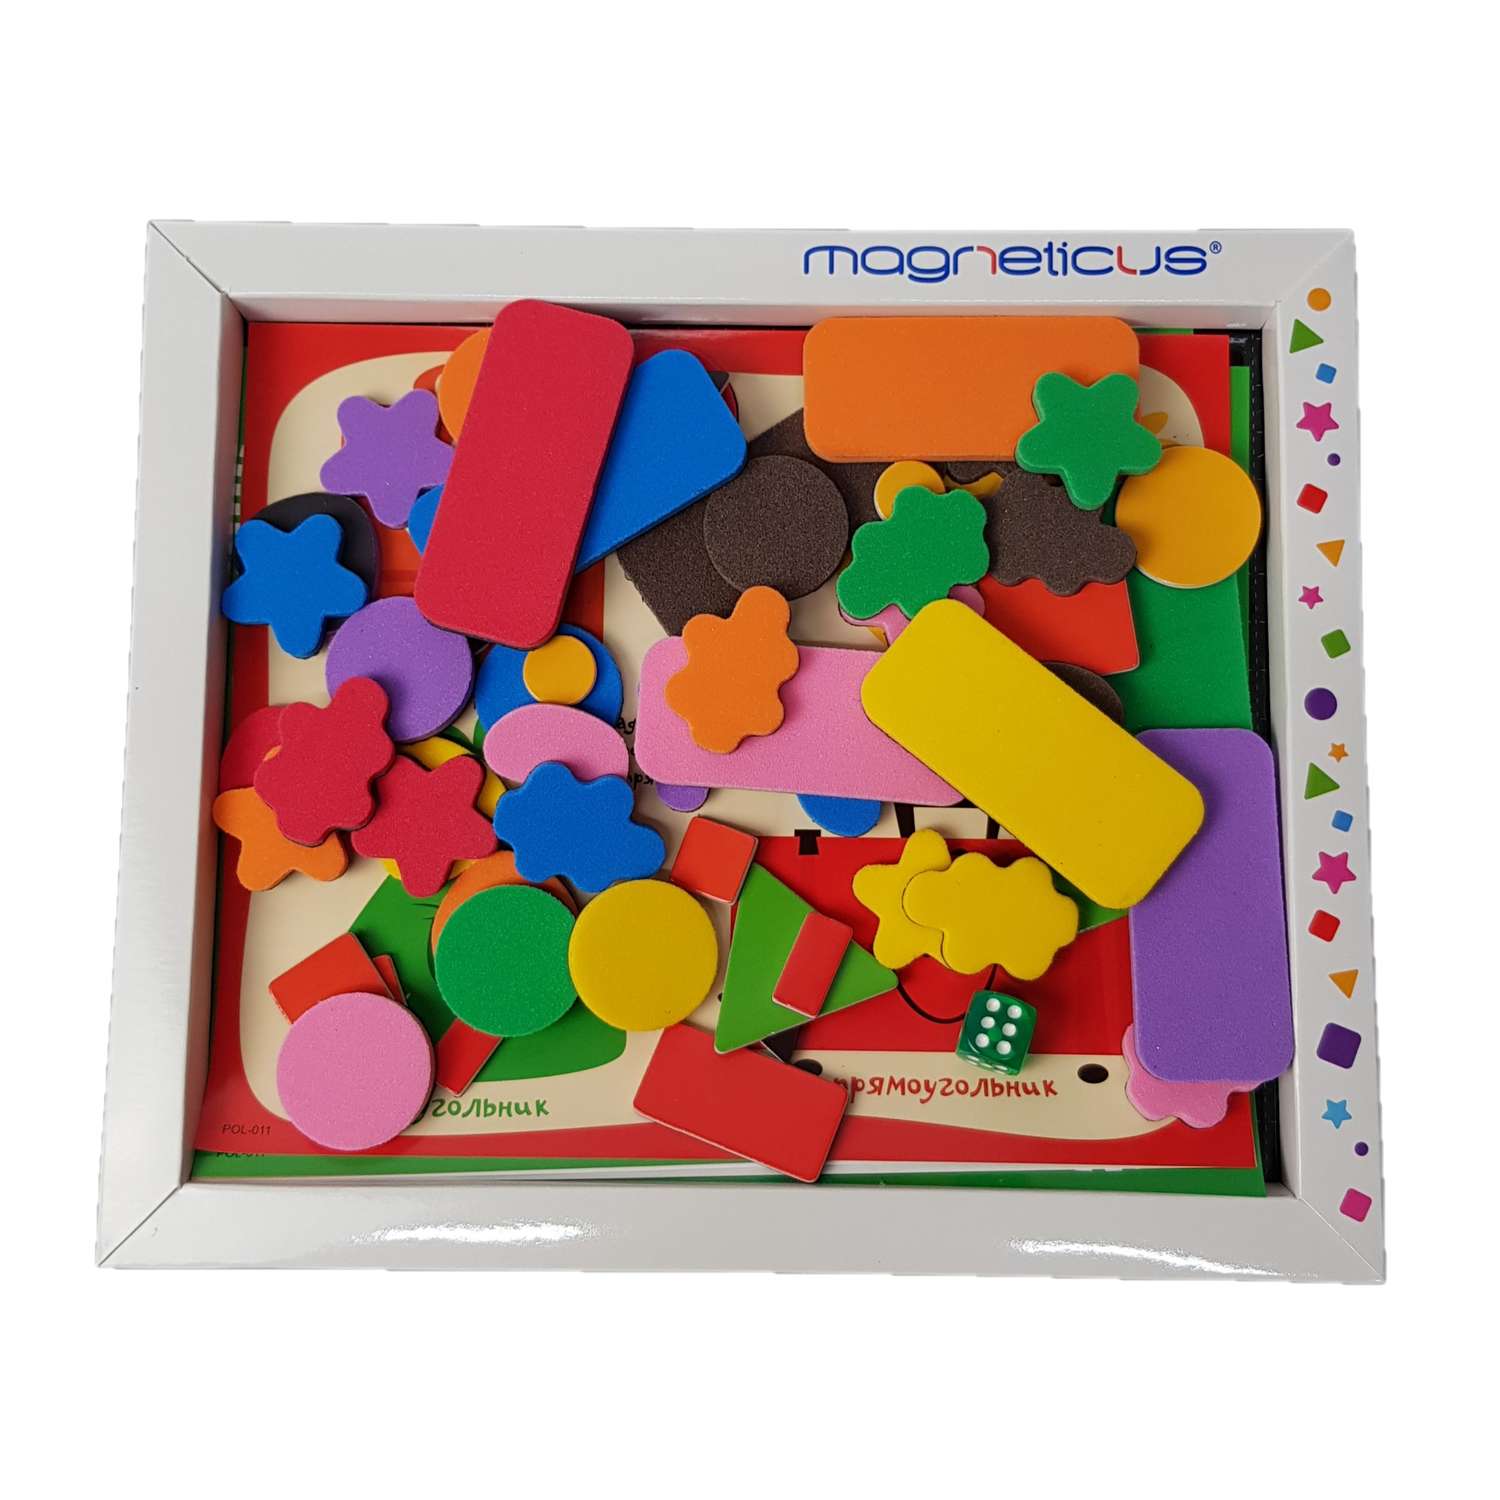 Игровой набор MAGNETICUS Формы и Цвета в картонной коробке - фото 2